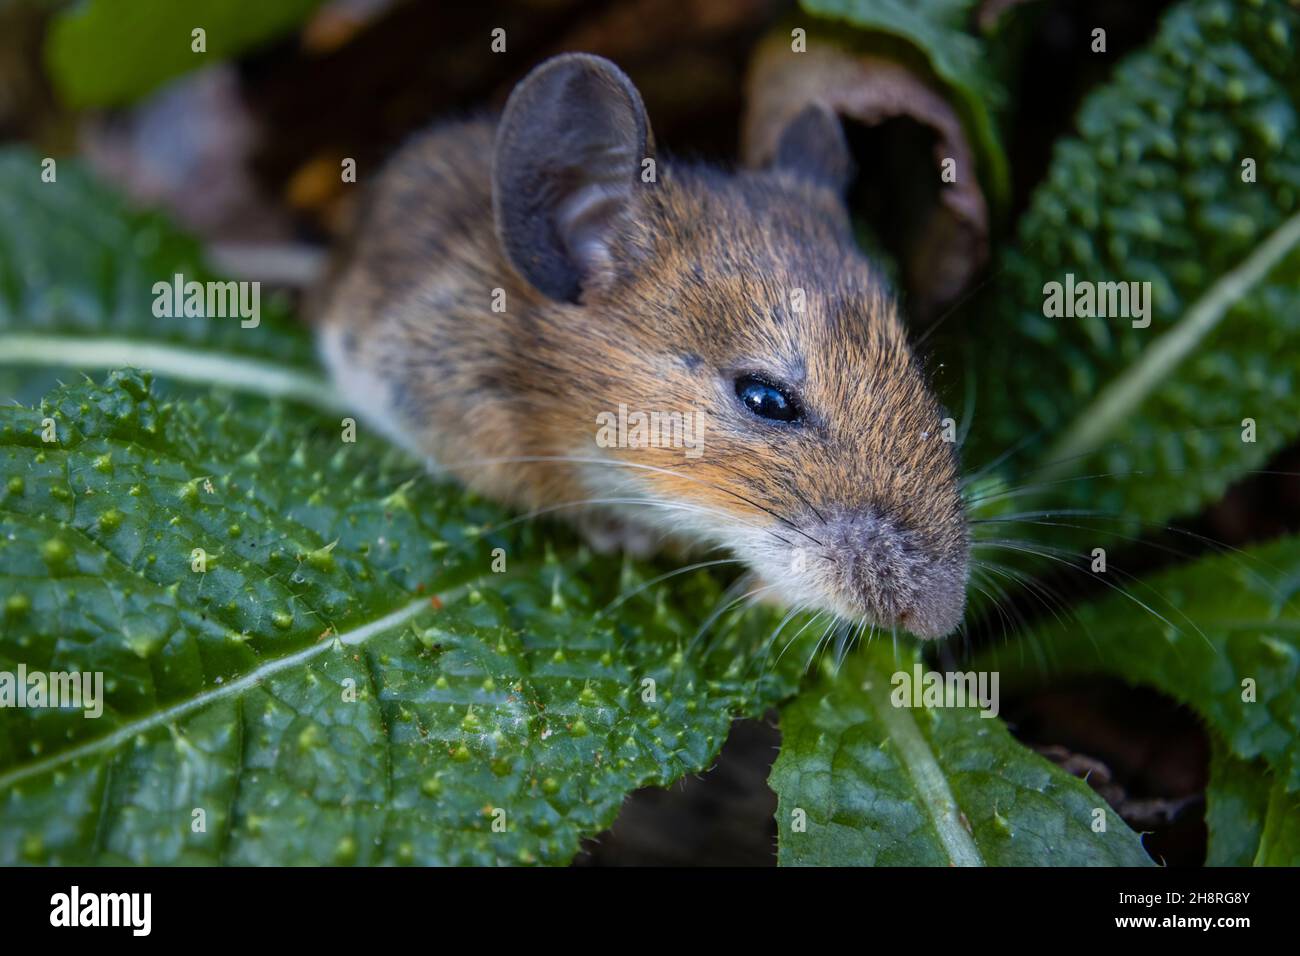 Souris de champ (Apodemus sylvaticus), également souris en bois: Gros plan de la tête avec des whiskers, et nez / museau, photographié dans un jardin à Surrey, se Angleterre Banque D'Images